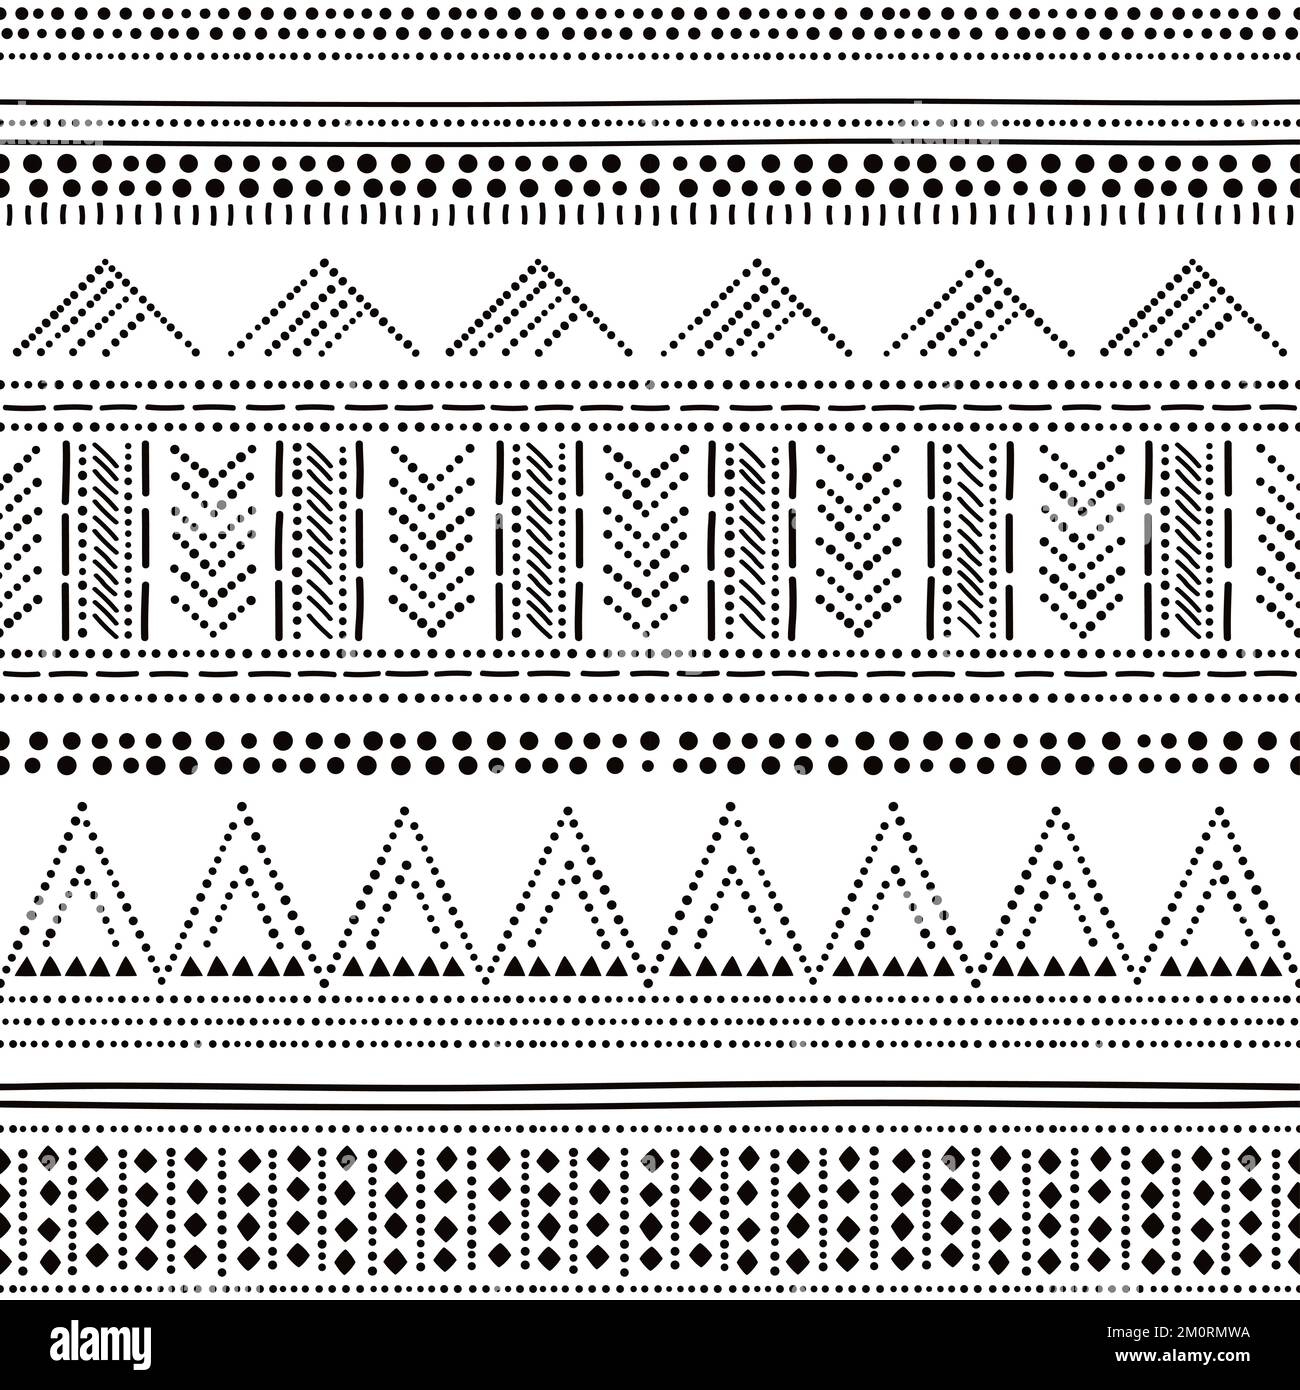 Glockenbecher Kultur inspiriert Vektor nahtlos gepunktetes Muster, prähistorisches Vase-Stil Retro Tribal Design aus Großbritannien, Irland, Andorra, Portugal Stock Vektor